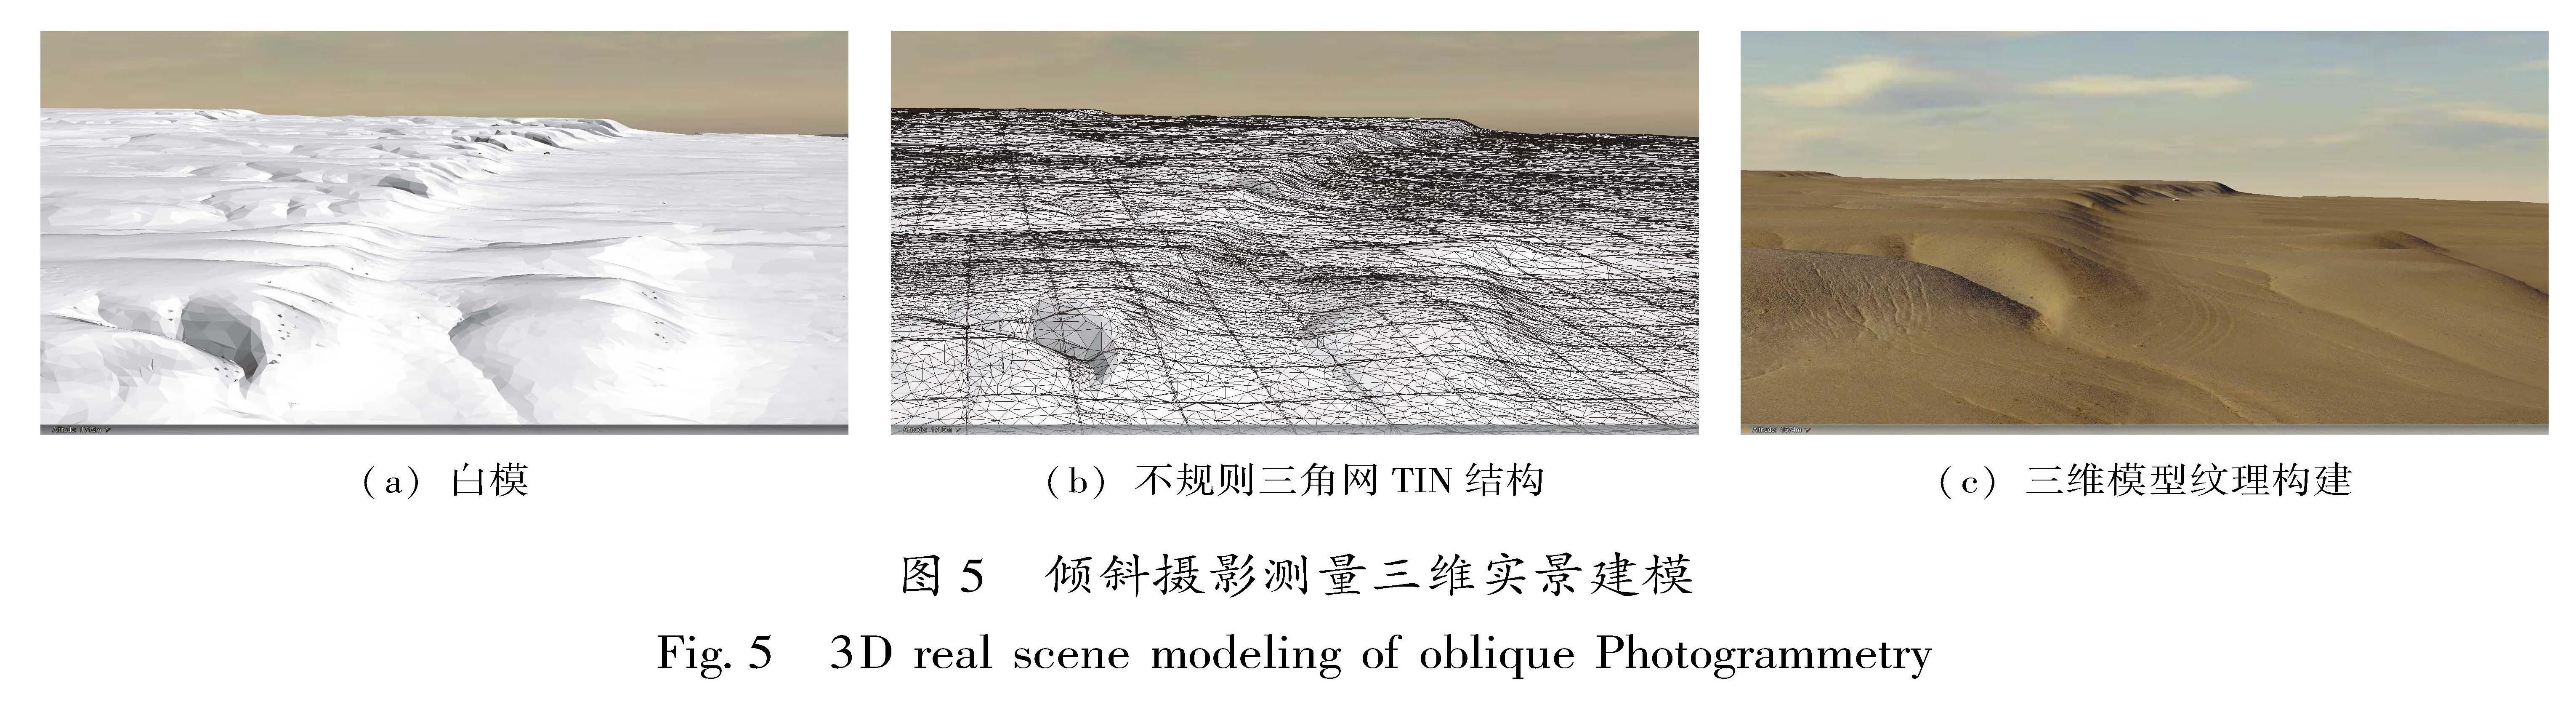 图5 倾斜摄影测量三维实景建模<br/>Fig.5 3D real scene modeling of oblique Photogrammetry